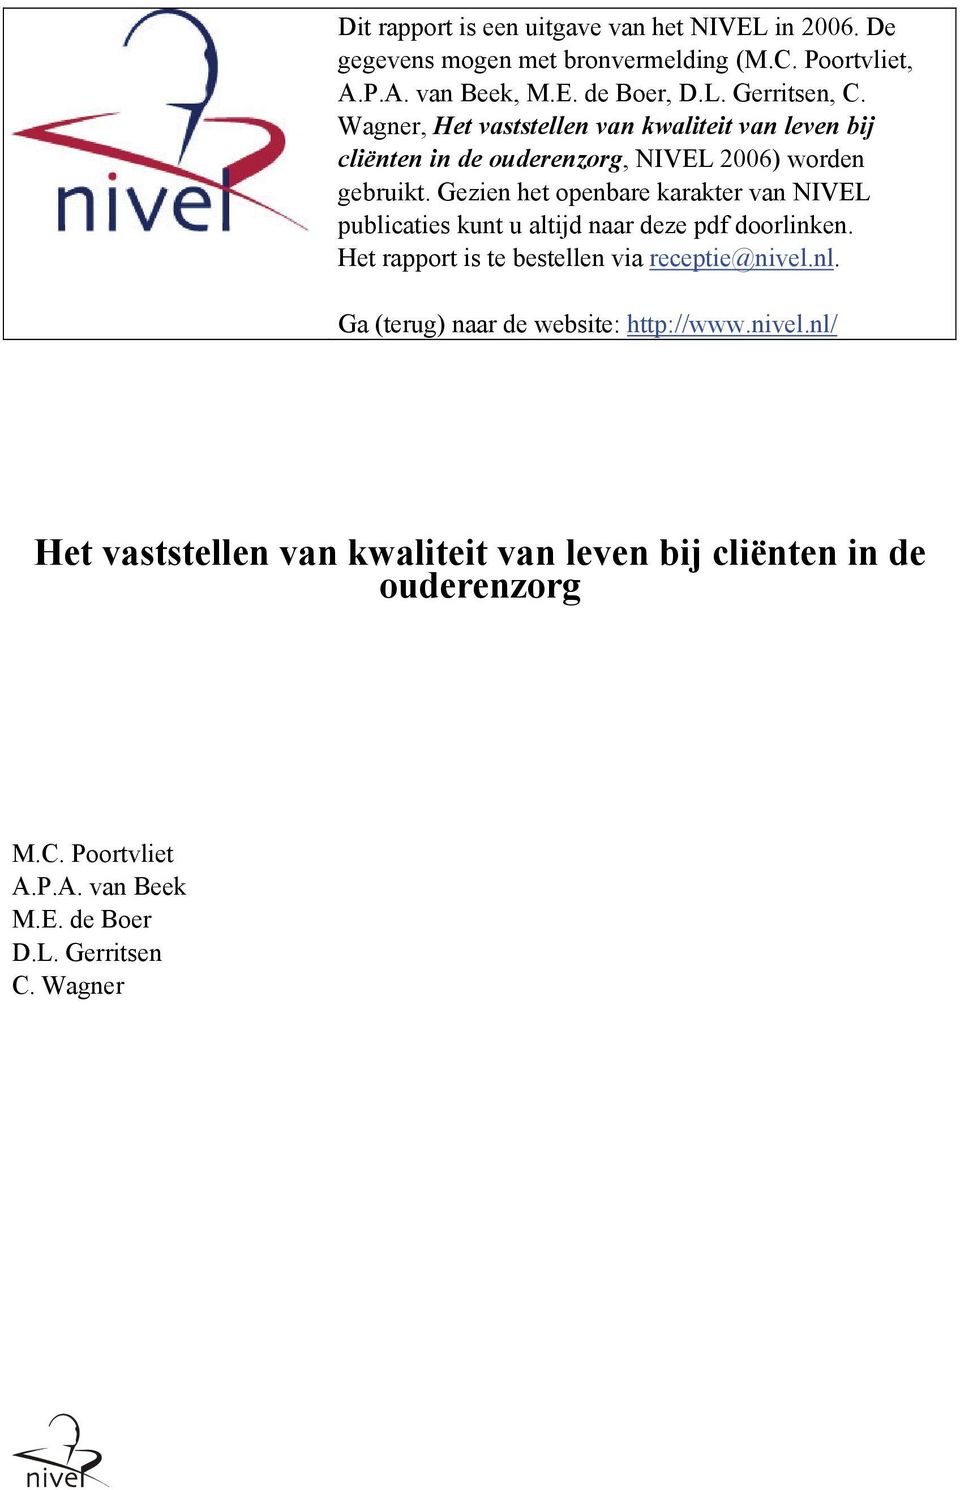 Gezien het openbare karakter van NIVEL publicaties kunt u altijd naar deze pdf doorlinken. Het rapport is te bestellen via receptie@nivel.nl.